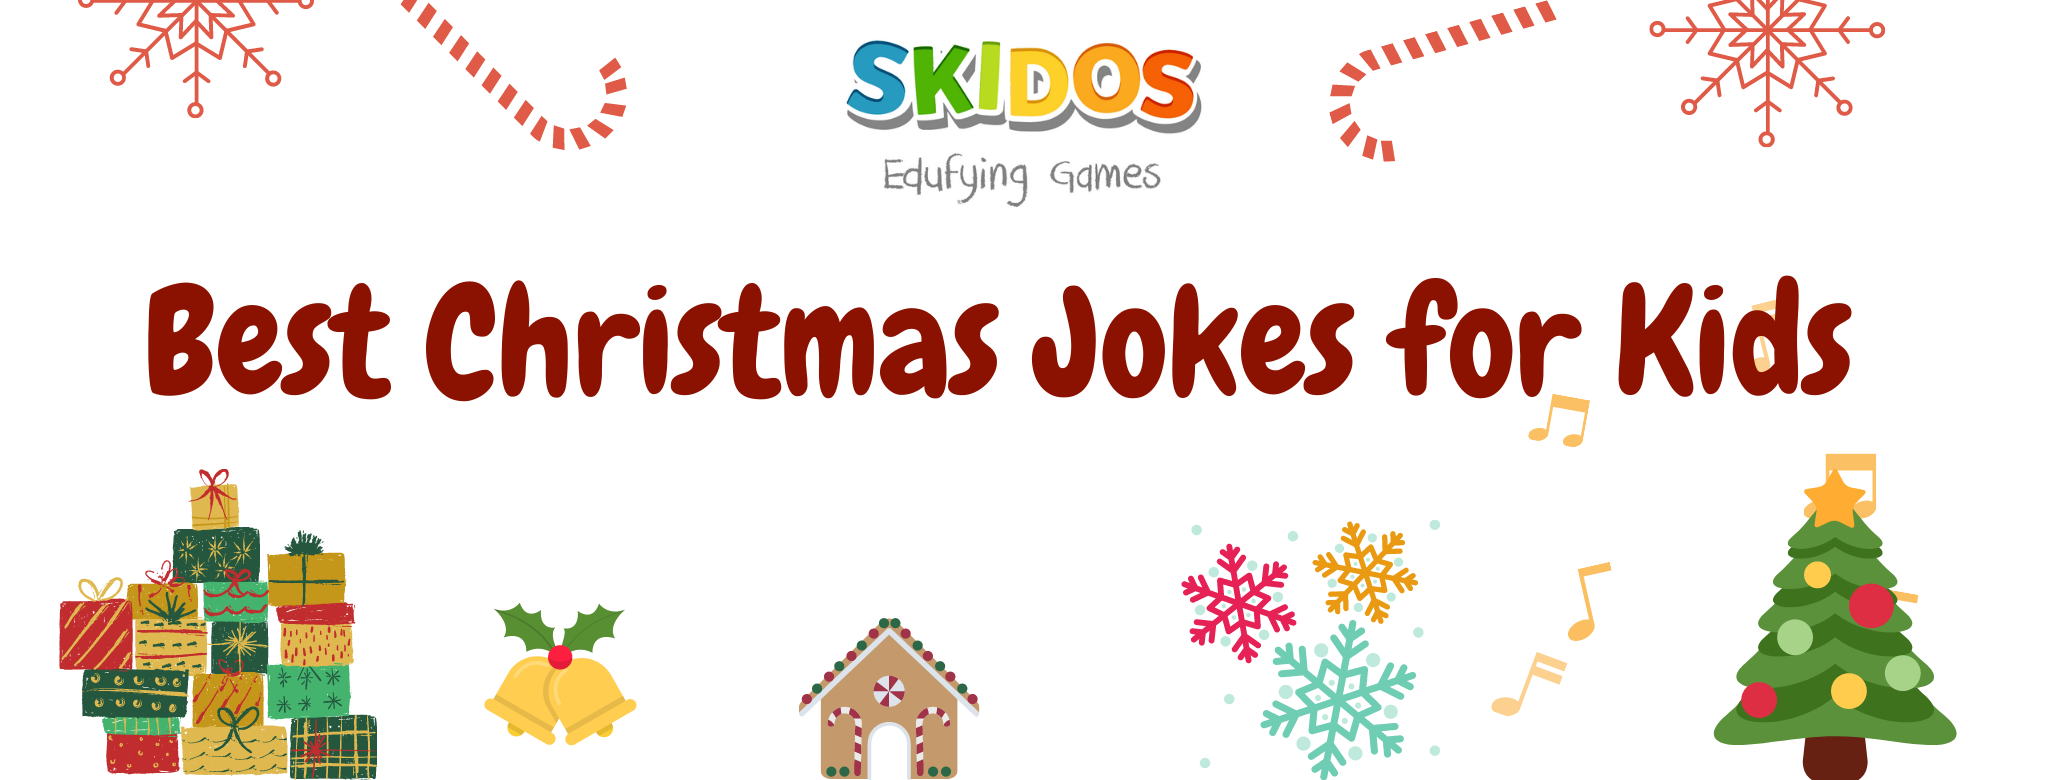 Best Christmas Jokes for Kids